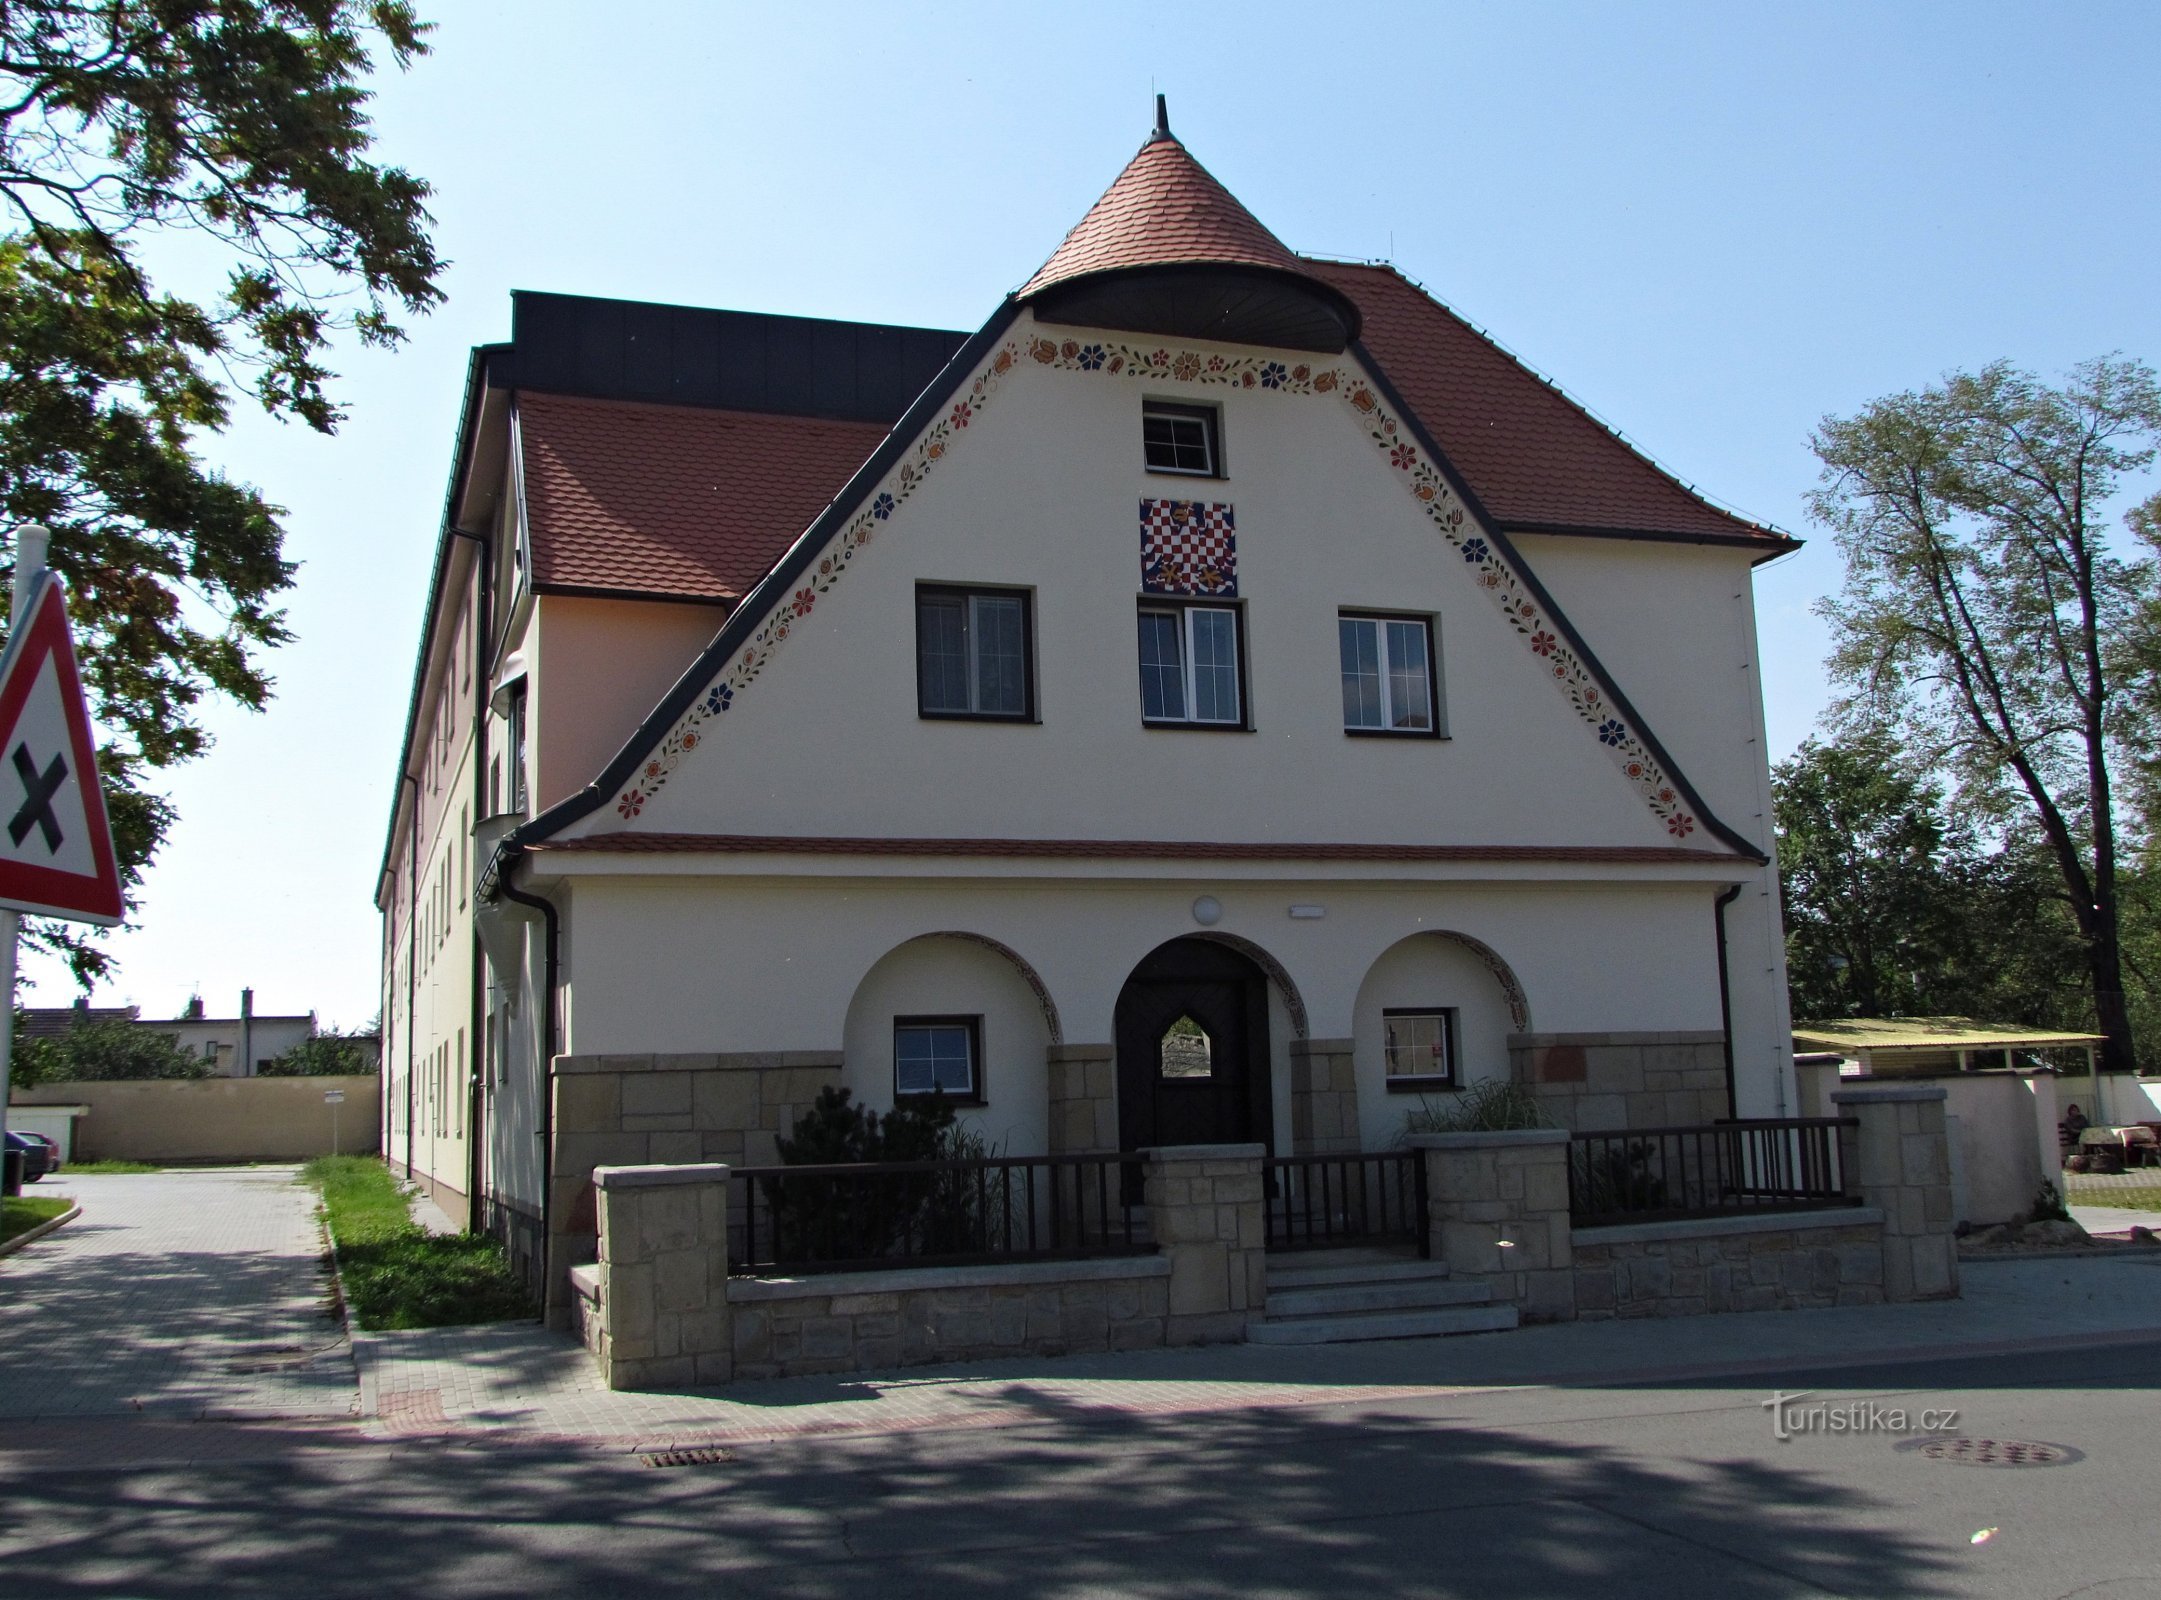 La maison de Tyrš